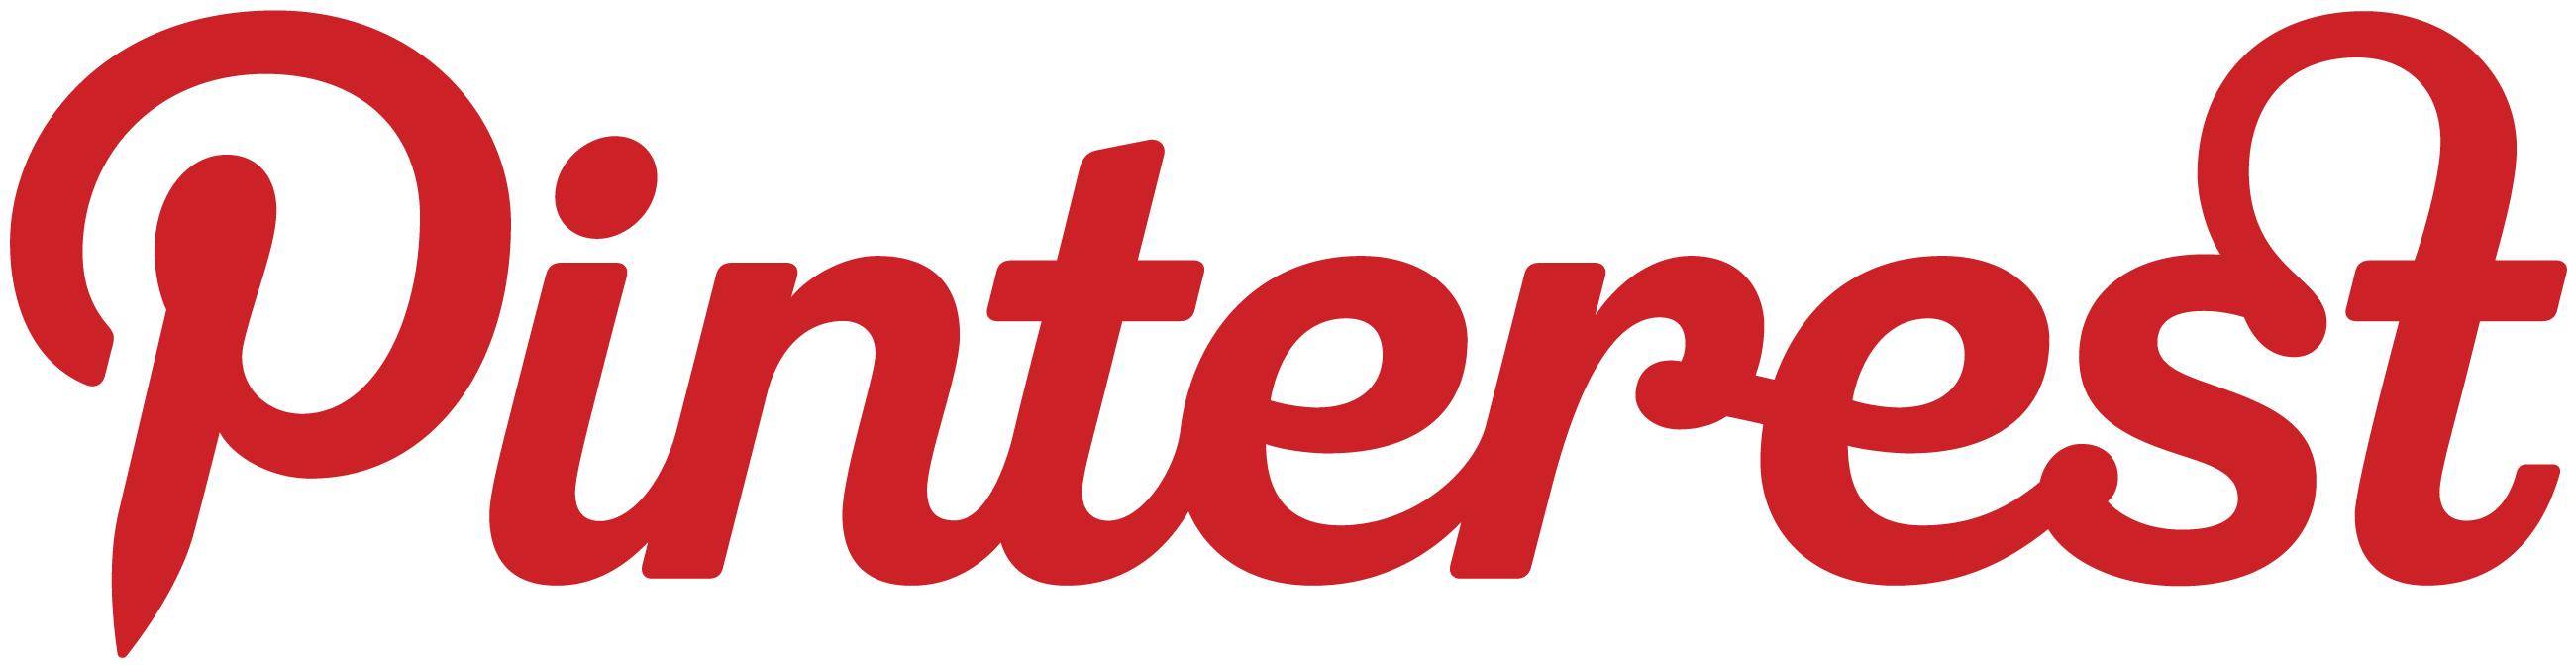 Pinterset Logo - pinterest logo red